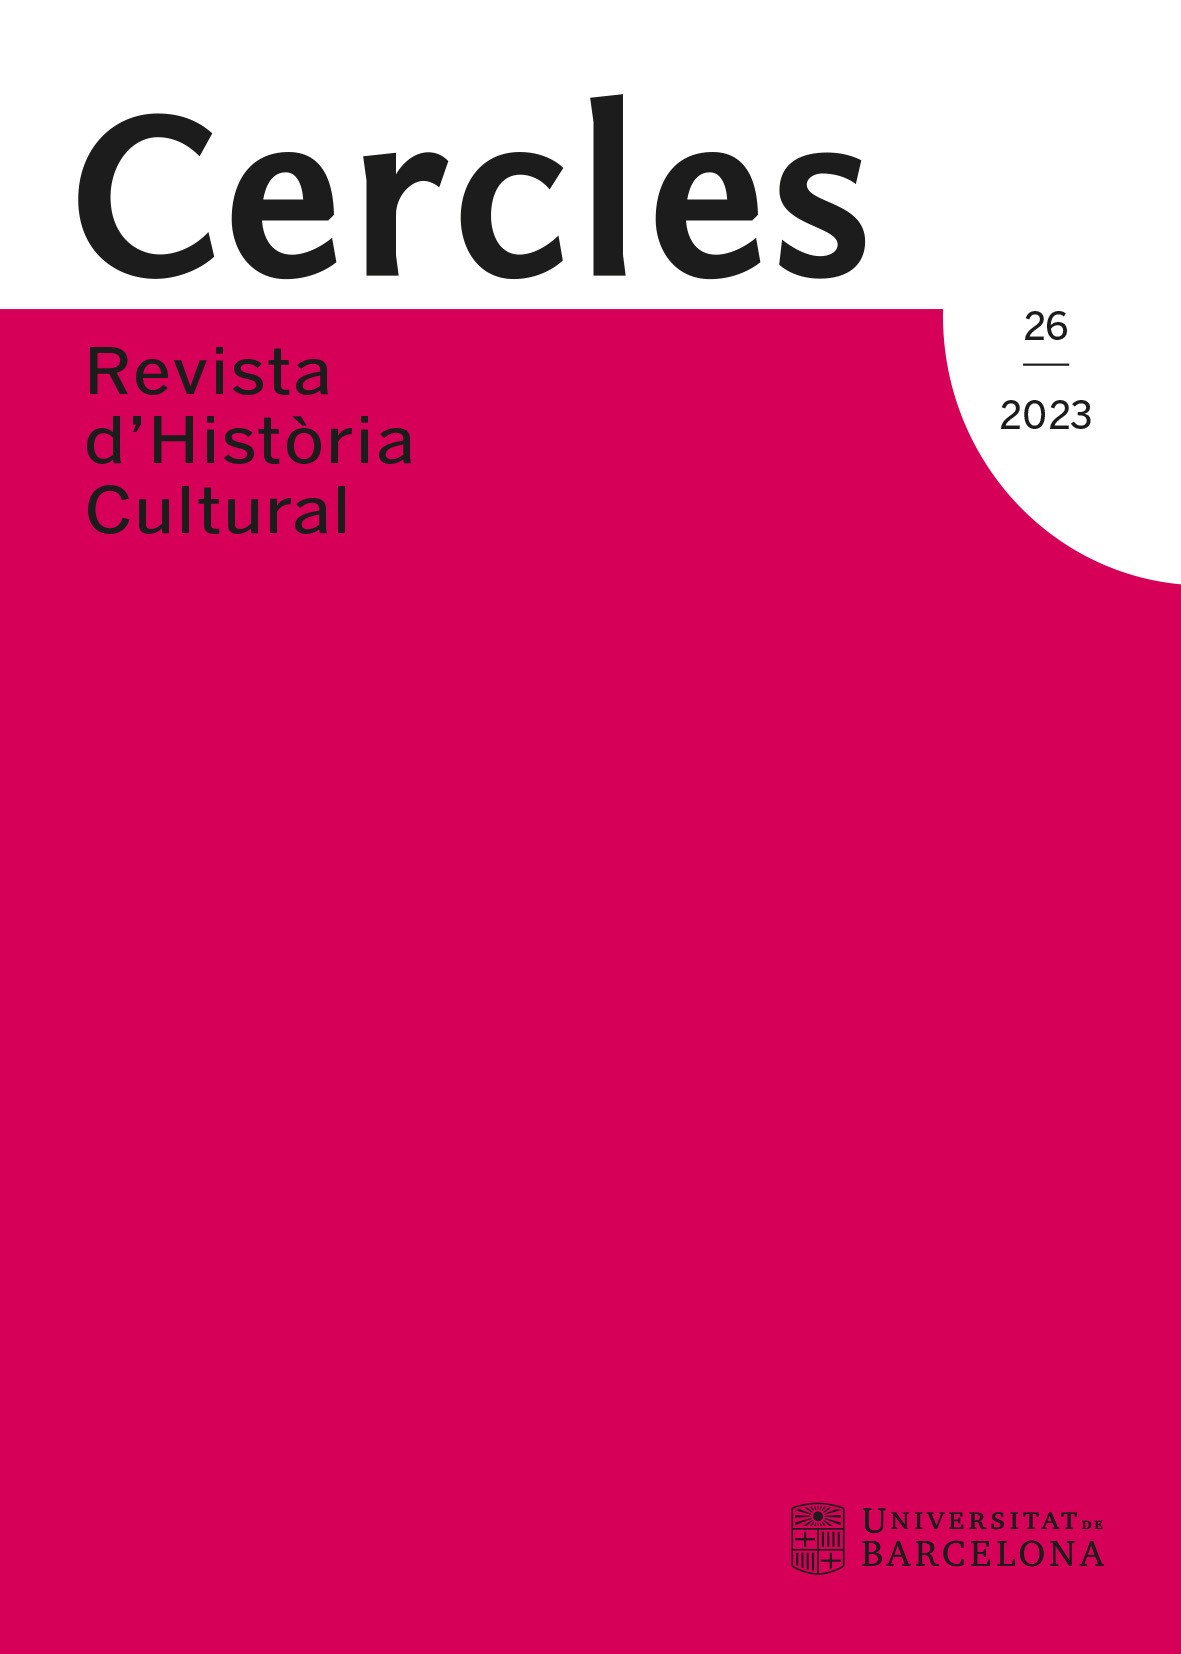 					Veure No 26 (2023): Cercles: Revista d'Història Cultural
				